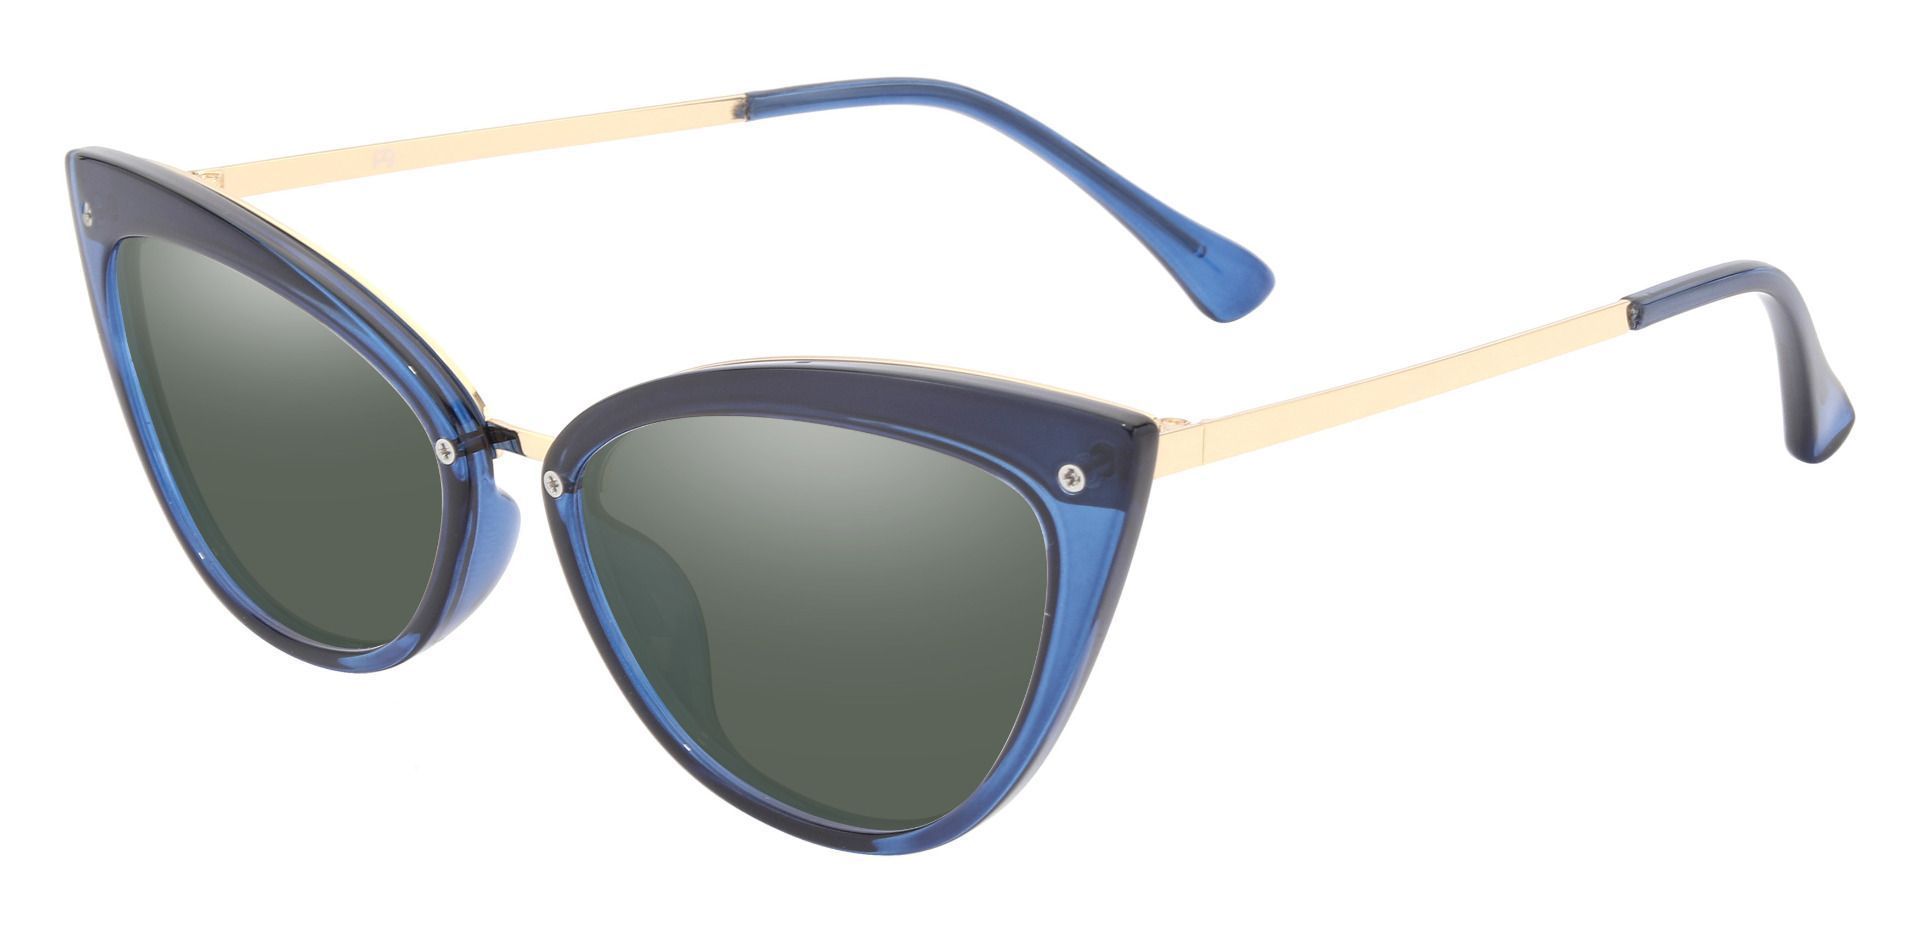 Glenda Cat Eye Prescription Sunglasses - Blue Frame With Green Lenses